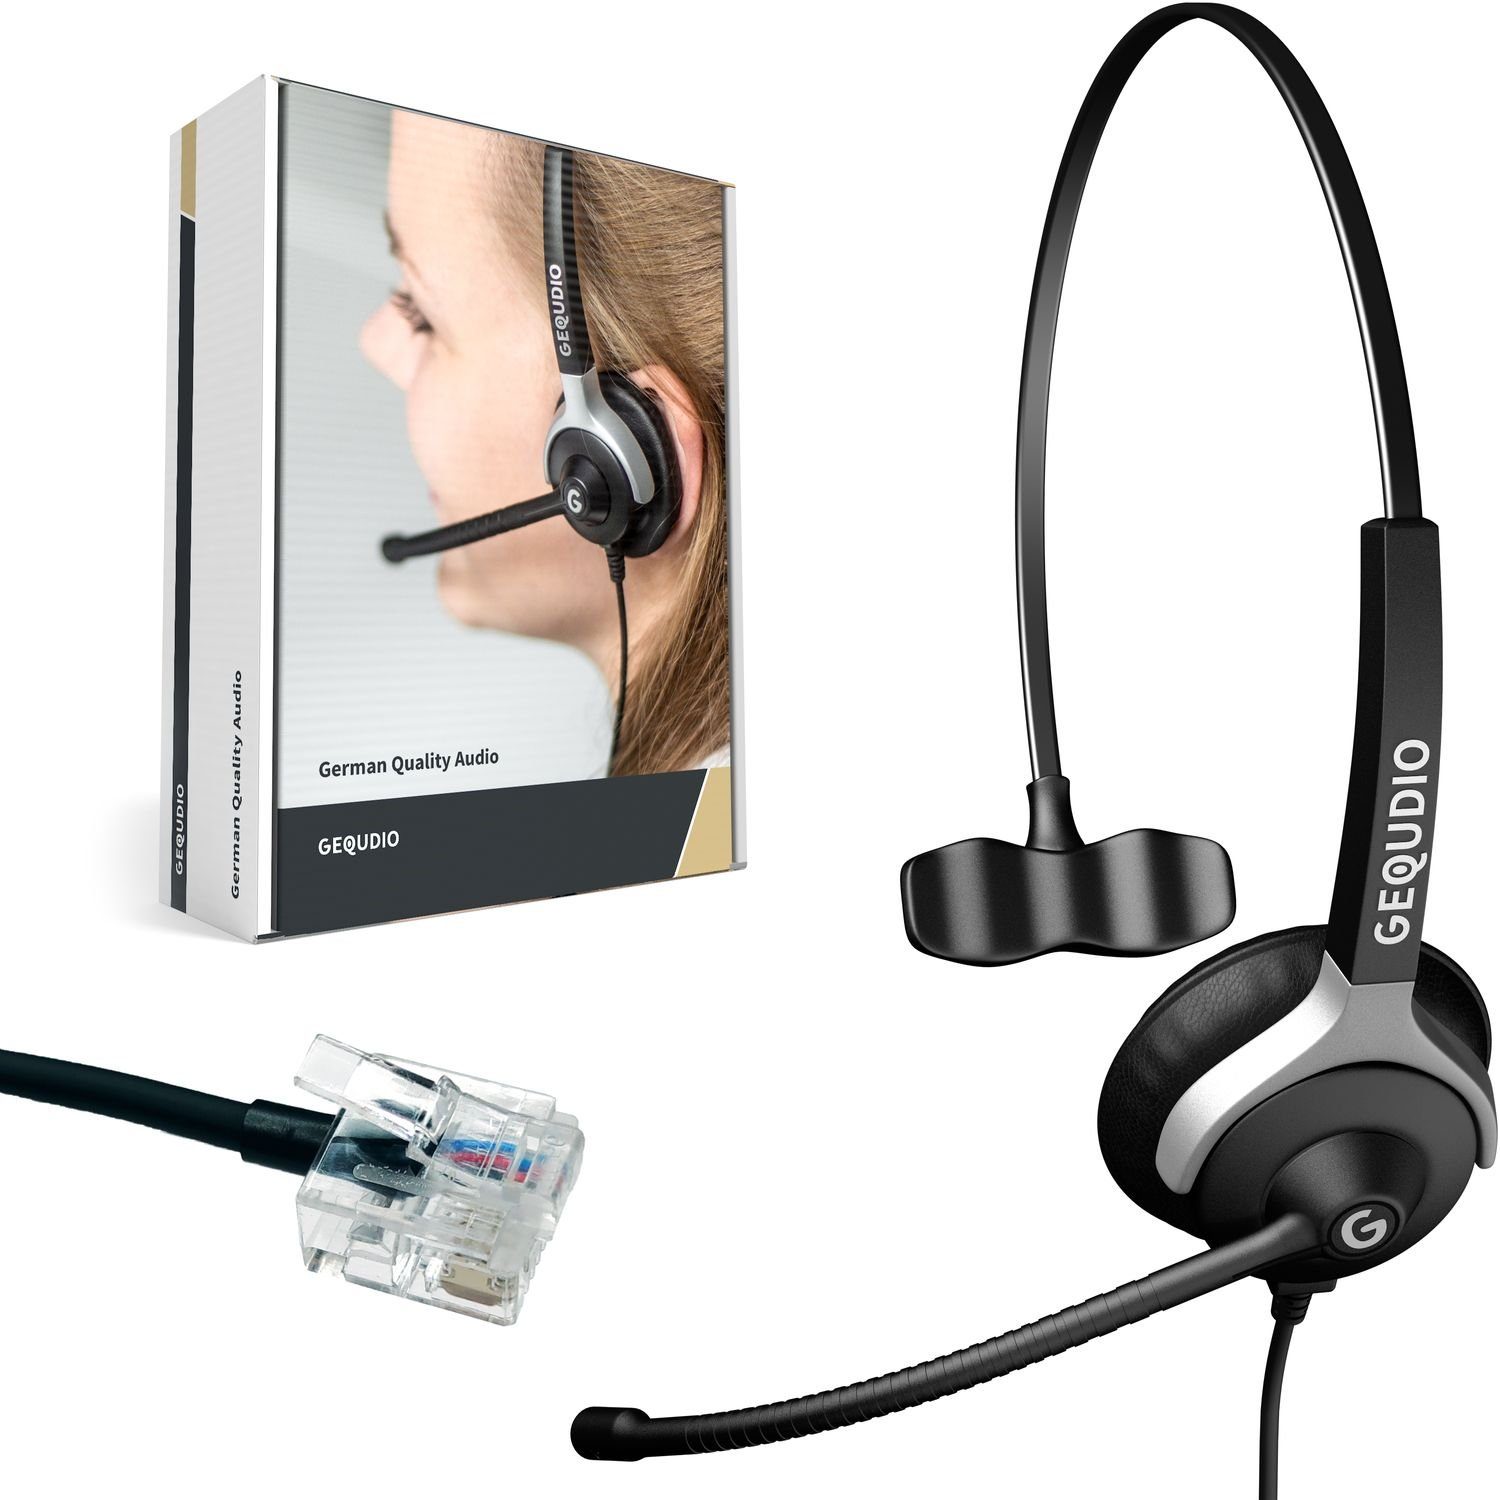 GEQUDIO Headset (Headset 1-Ohr für Unify mit Kabel) online kaufen | OTTO